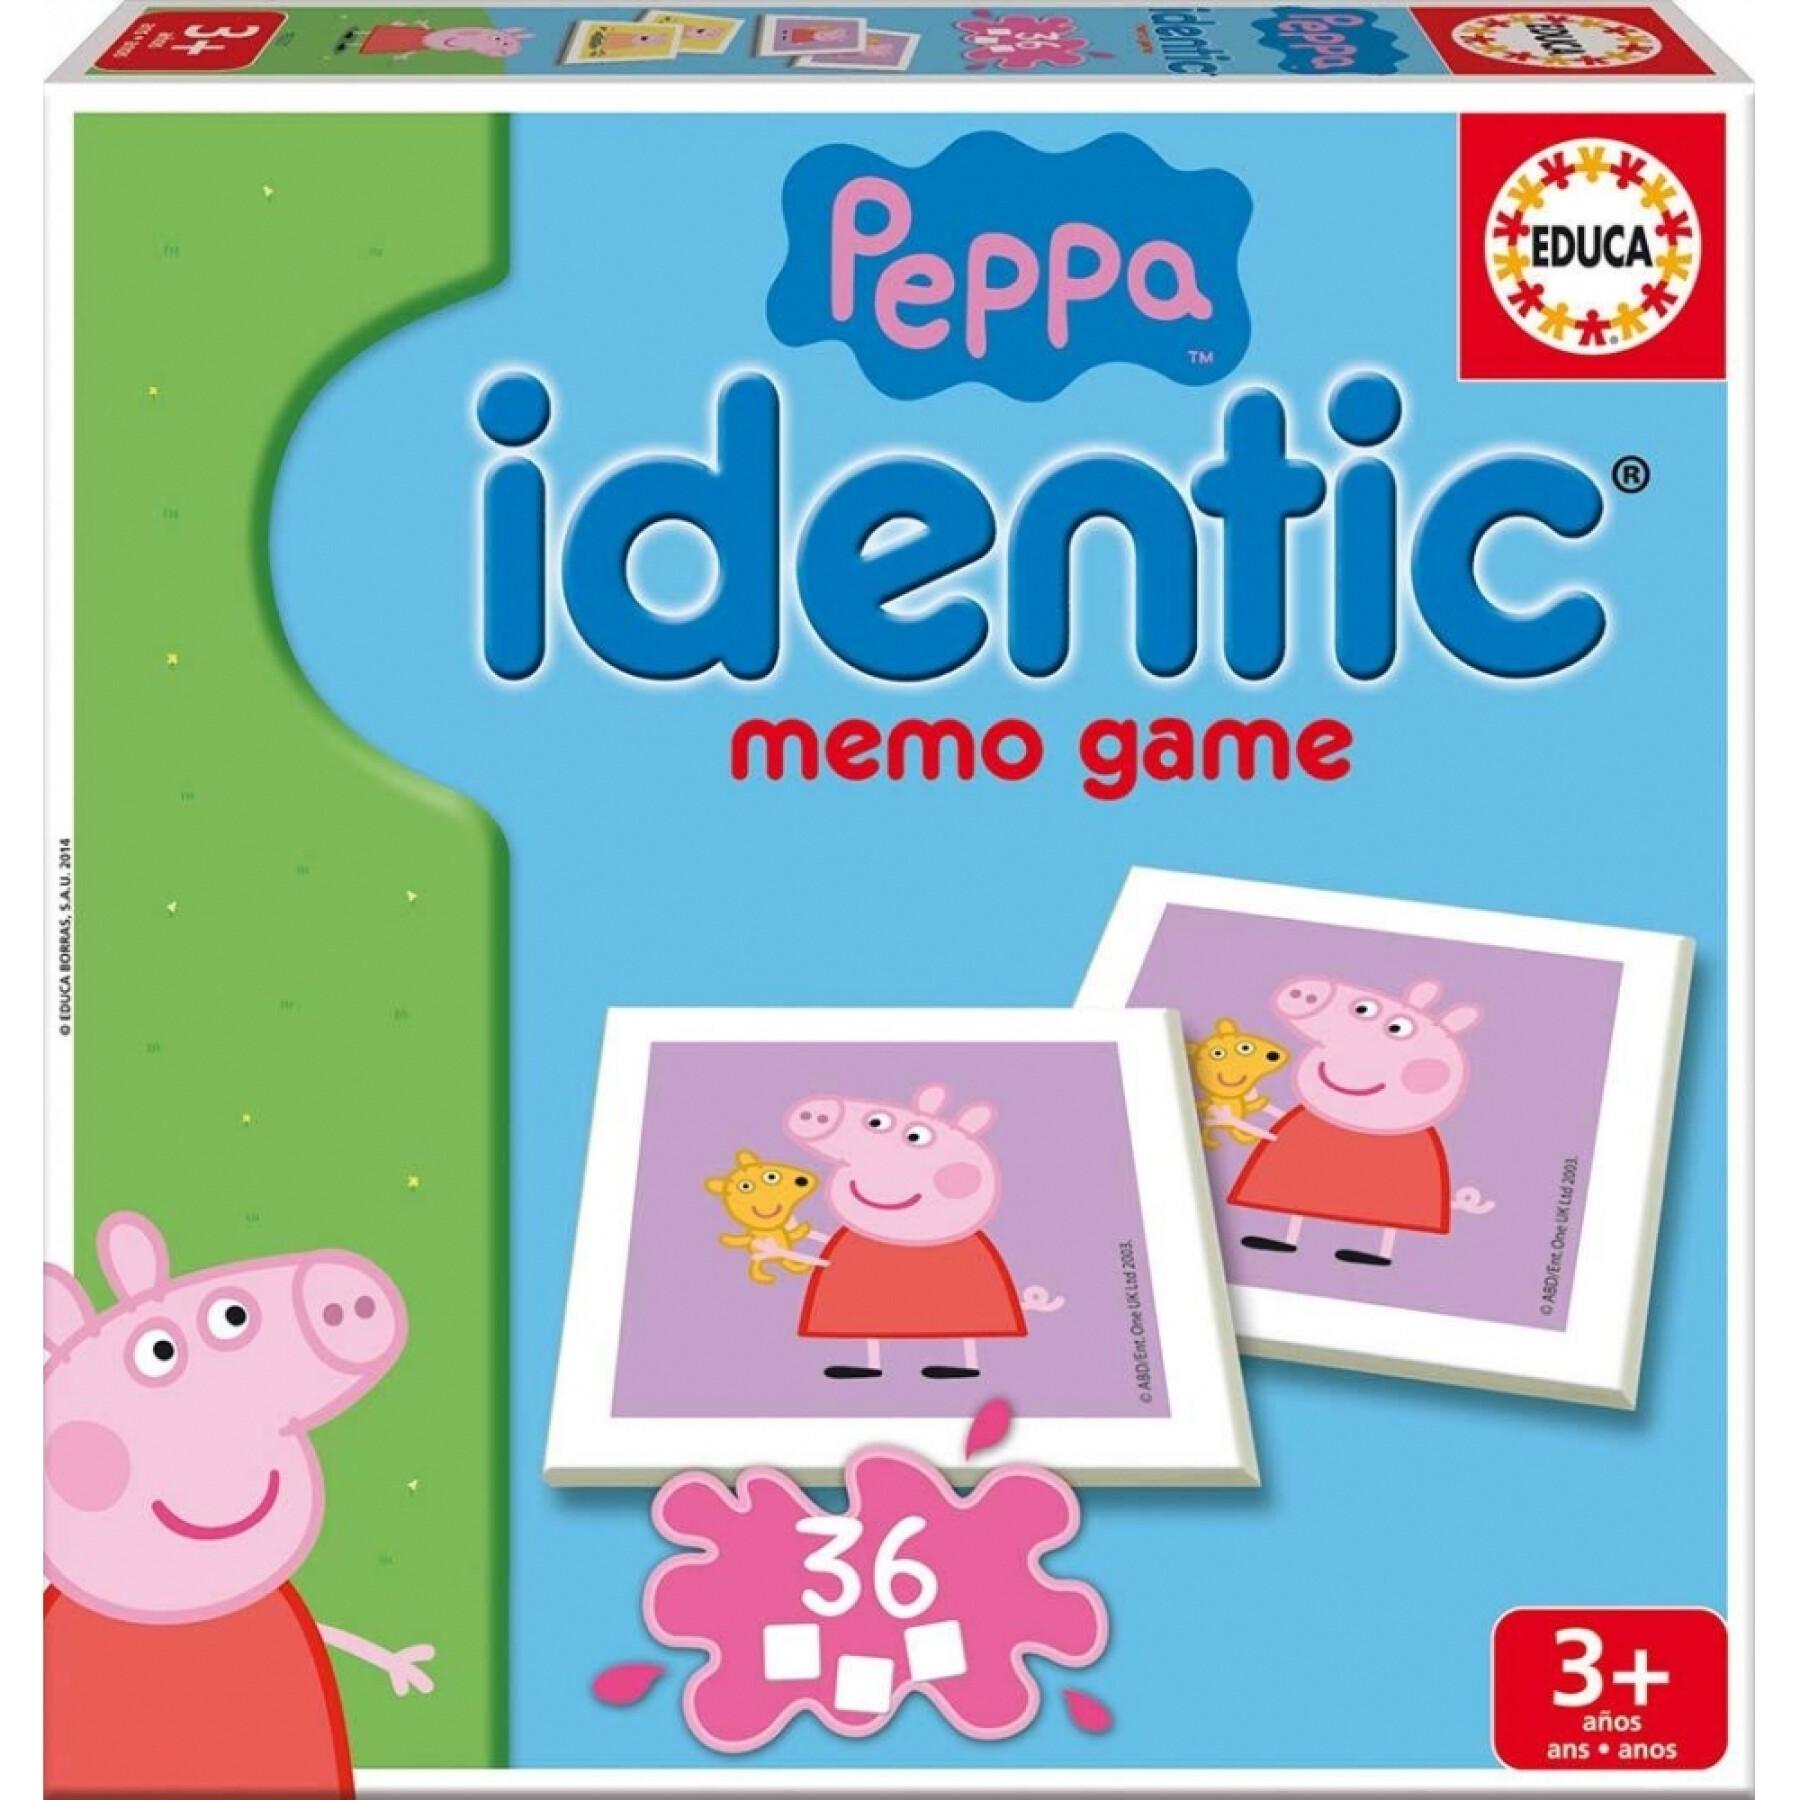 Educational memory games Peppa Pig